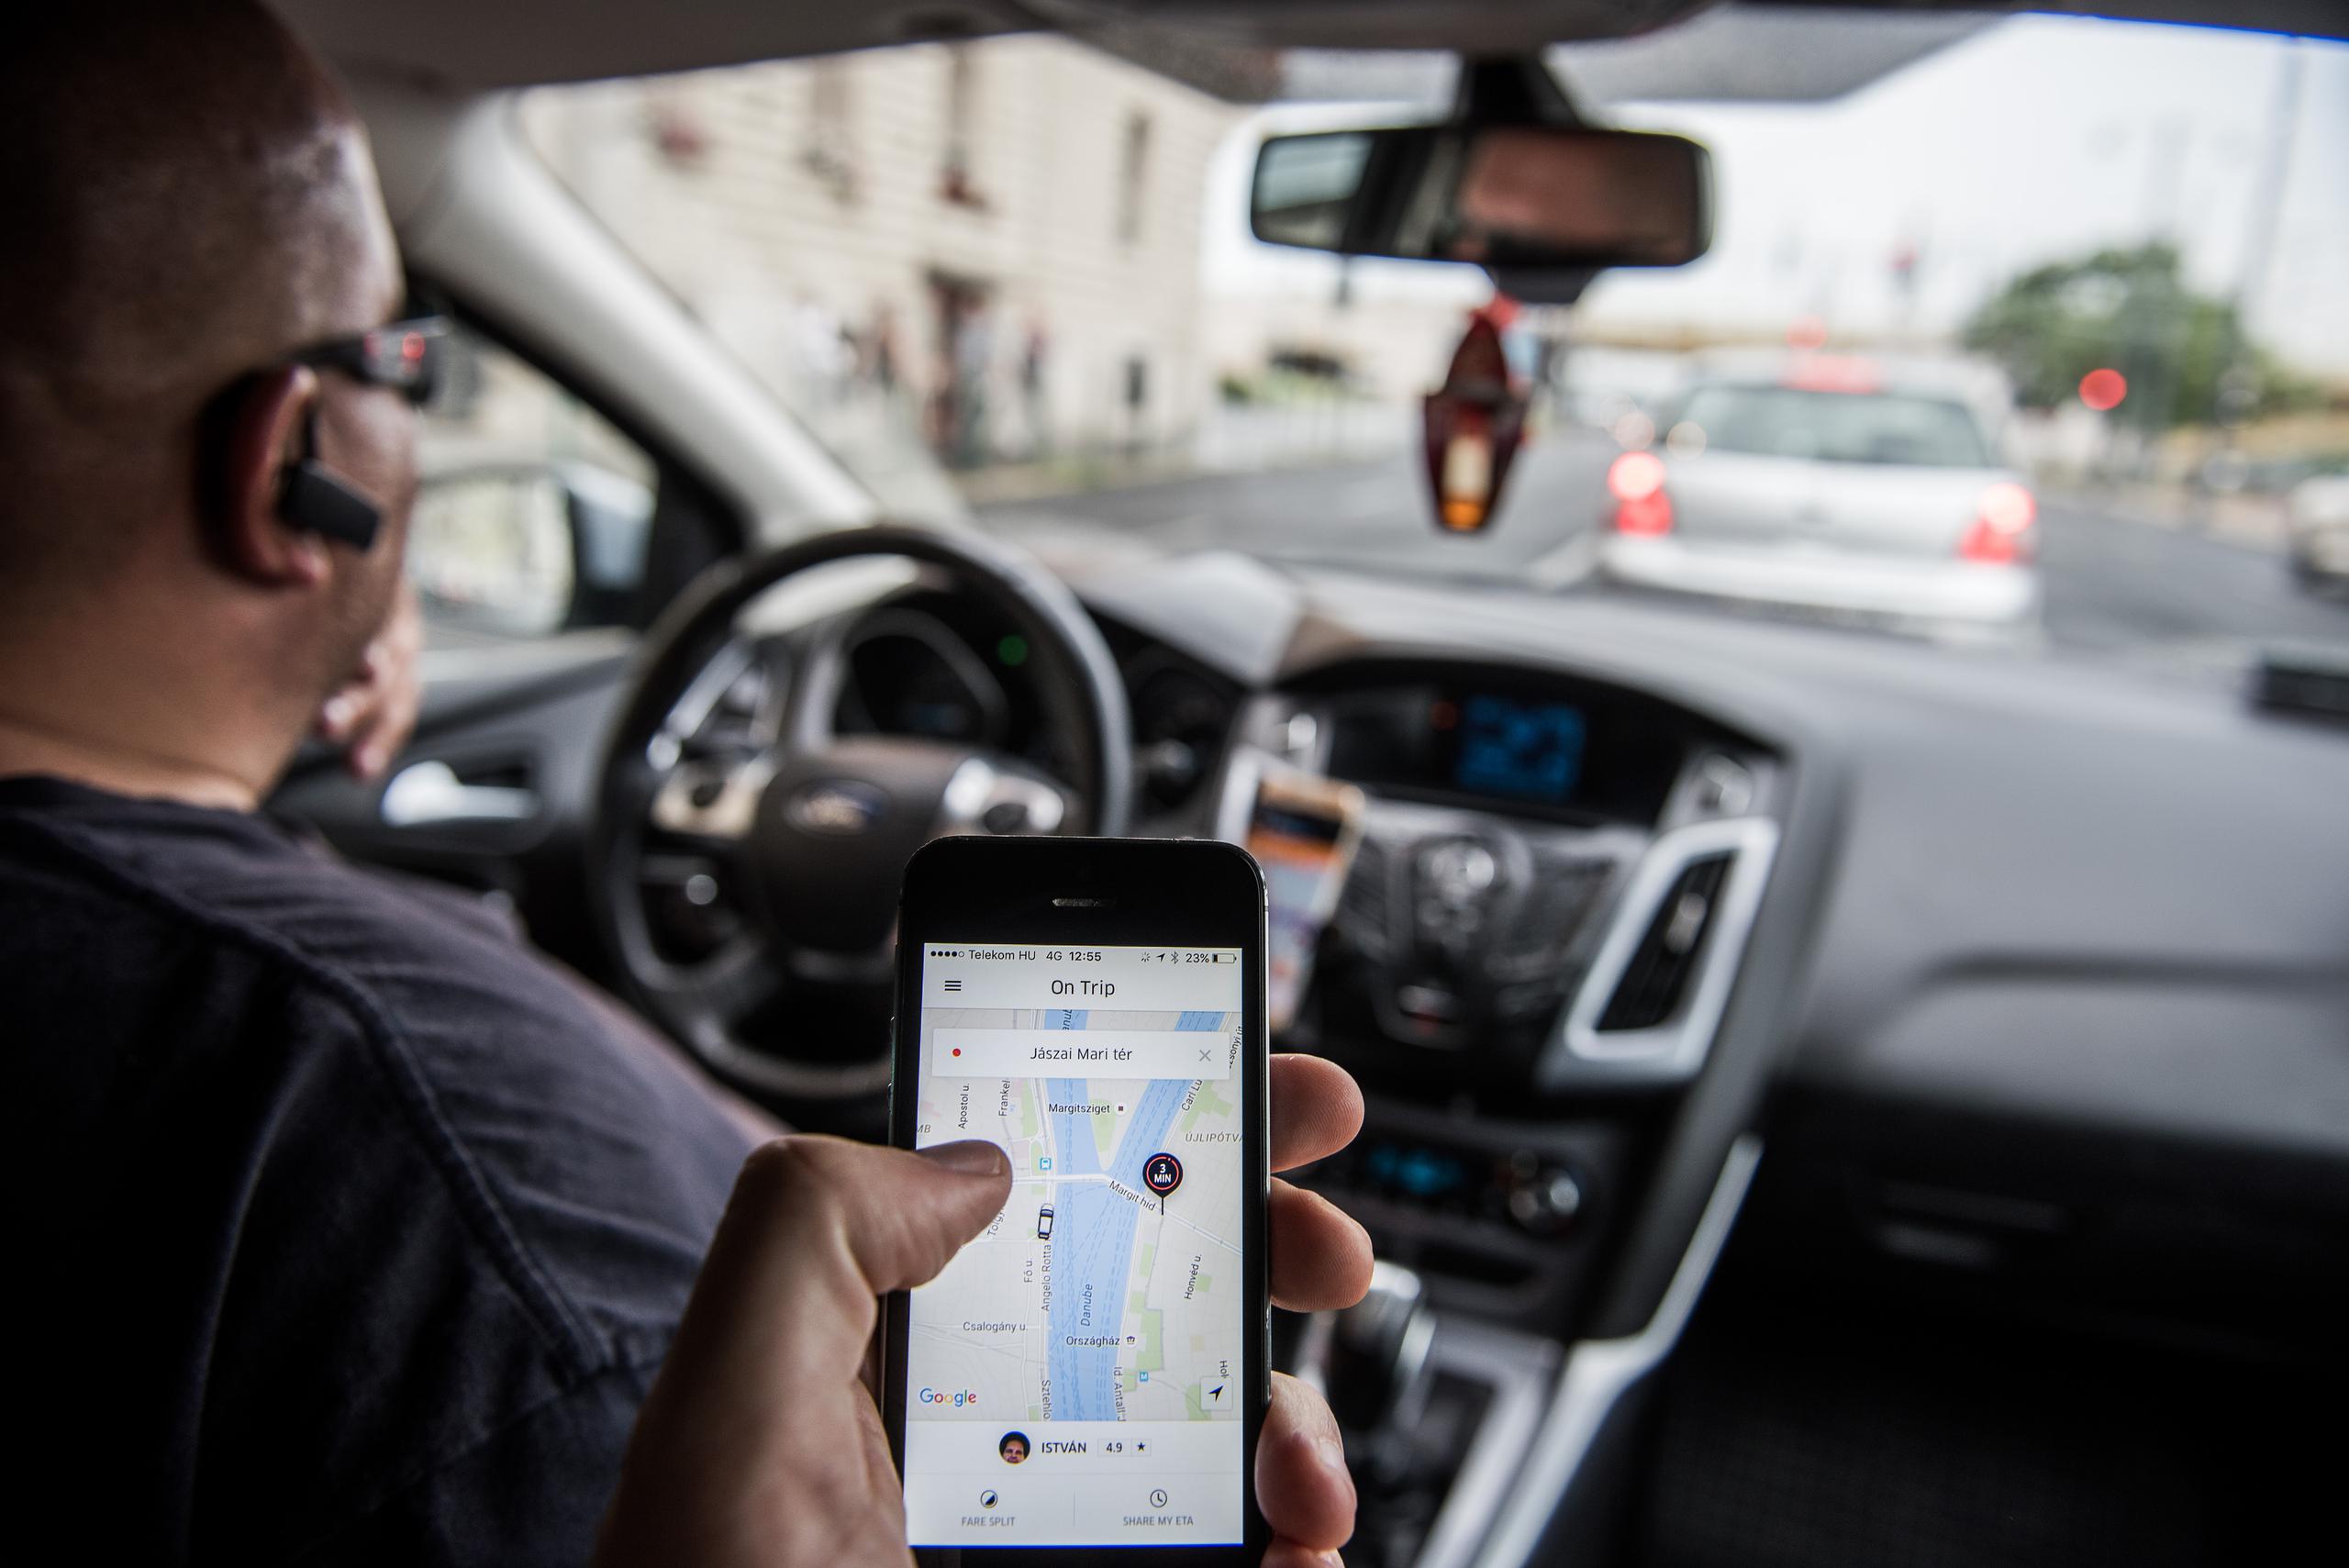 Muchas personas han evitado viajar en vehículos compartidos a causa de la pandemia de coronavirus. Las reservaciones brutas del negocio de movilidad de Uber se hundieron 73% en el segundo trimestre.